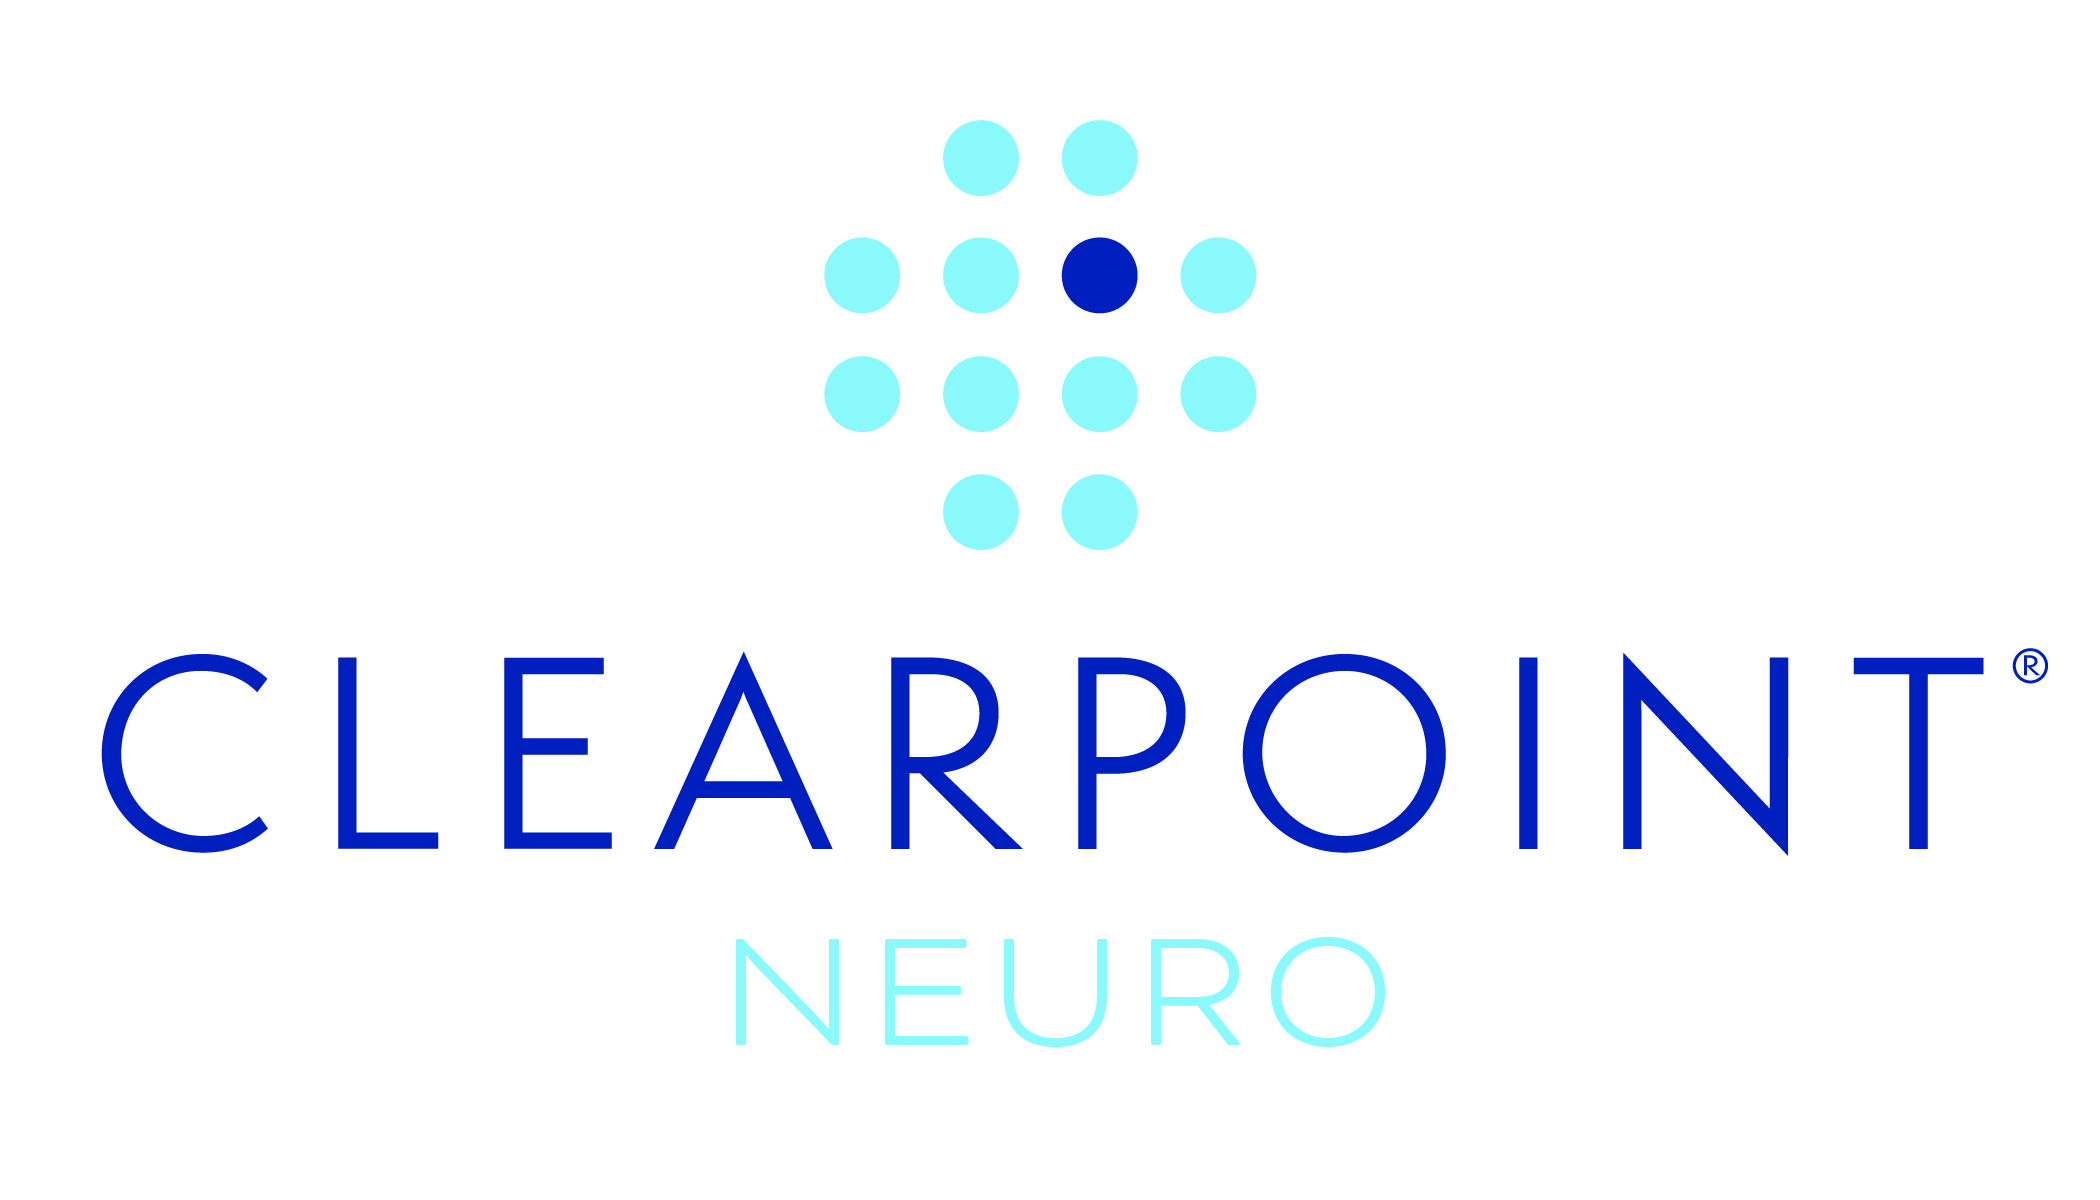 ClearPoint Neuro annonce un accord de licence exclusif pluriannuel avec l’UCSF concernant une plateforme innovante pour l’administration cellulaire intracérébrale